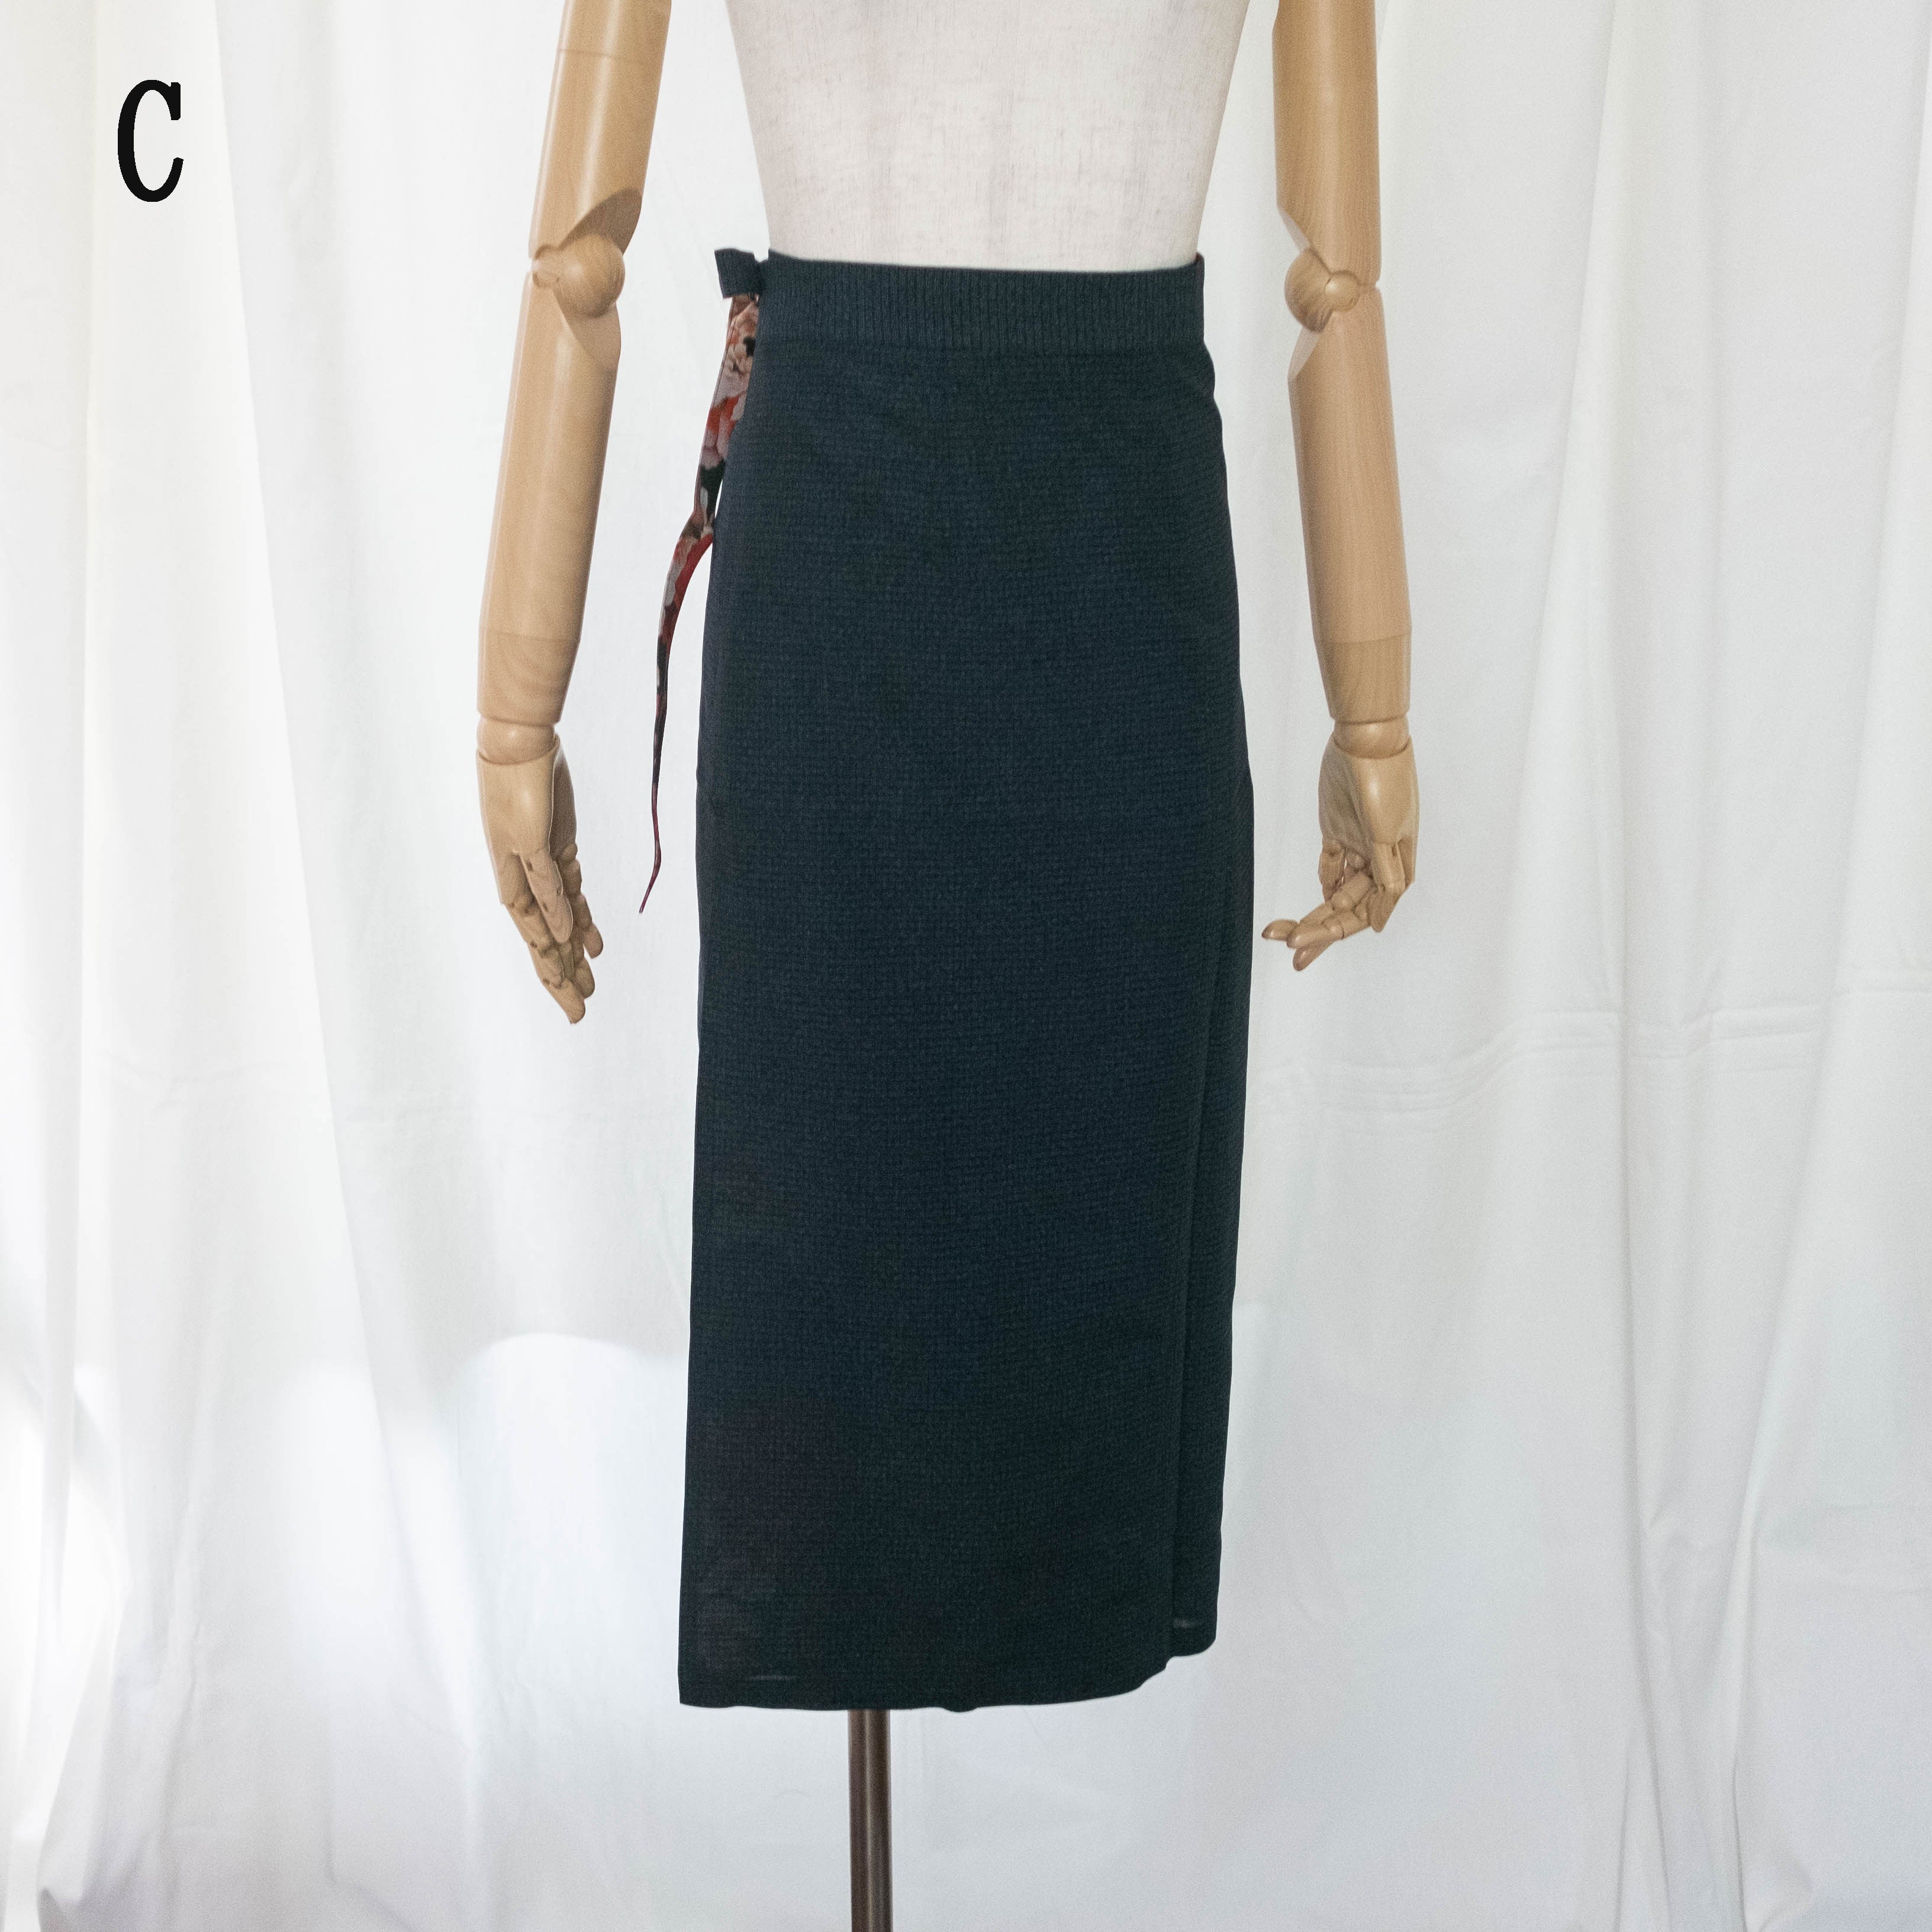 Reversible Skirt Long Straight - Fiori Verde